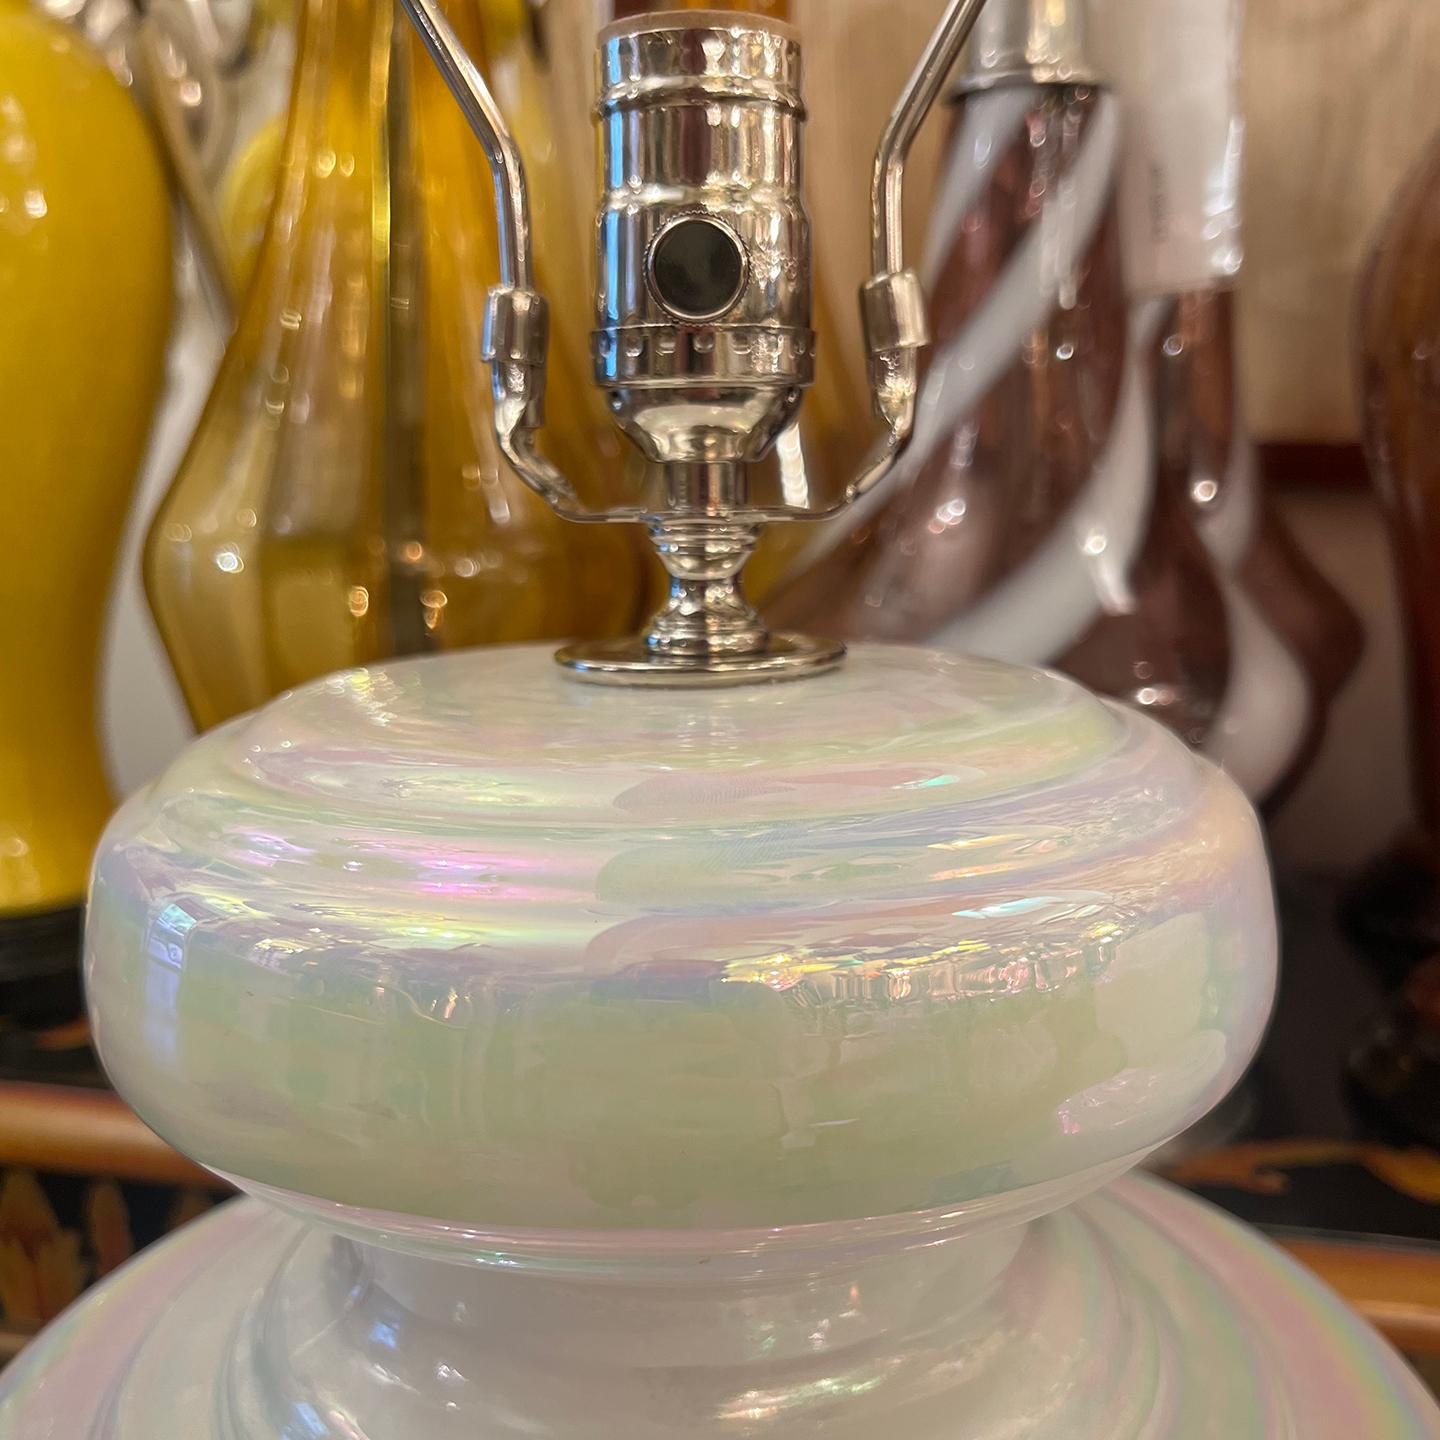 Paire de lampes en verre opalin blanc français des années 1940 avec des bases en argent.

Mesures :
Hauteur du corps : 15
Hauteur jusqu'au support de l'abat-jour 25